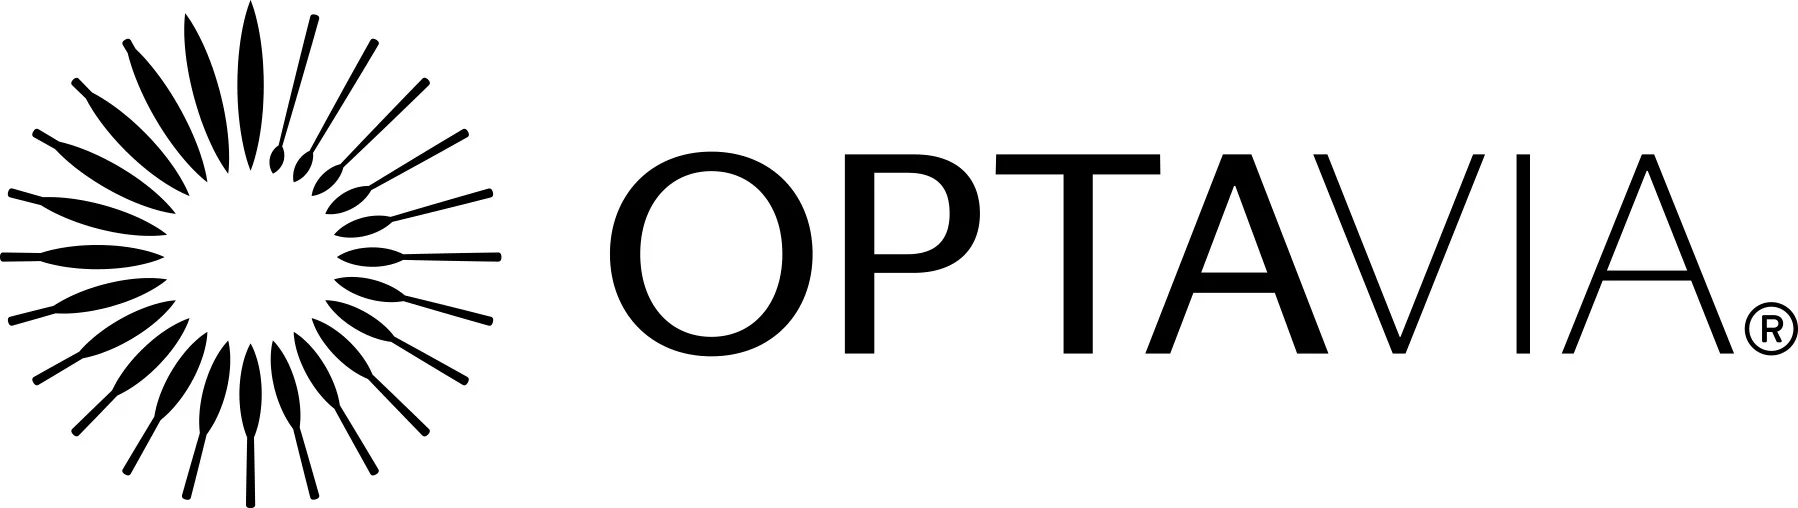 OPTAVIA Logo